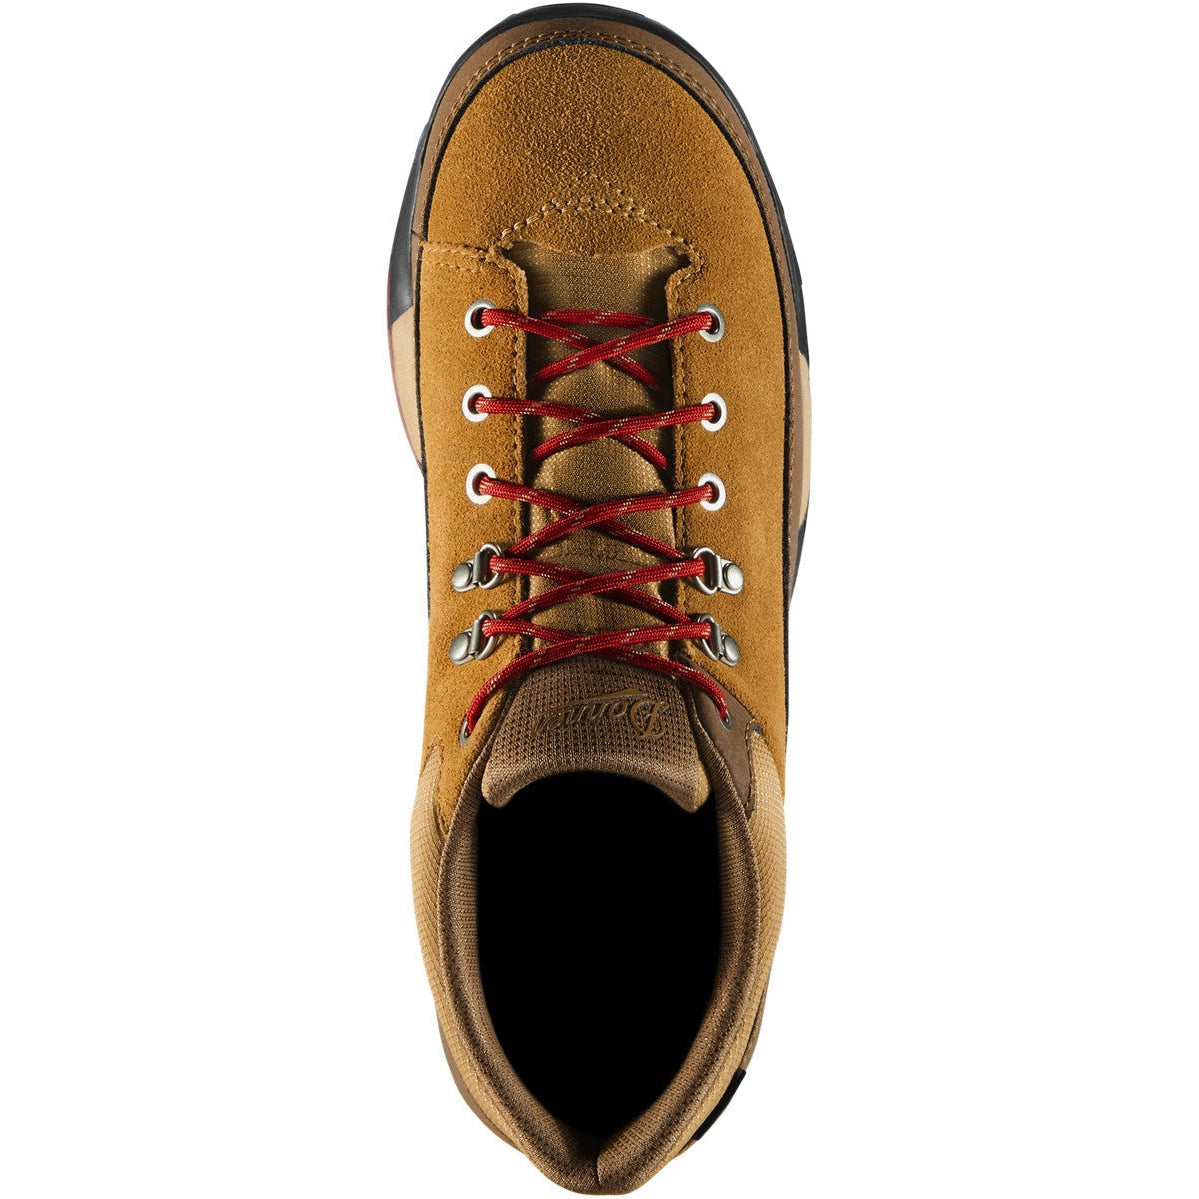 Danner Men's Panorama Low 4" Waterproof Hiking Shoe - Brown/Red - 63470  - Overlook Boots